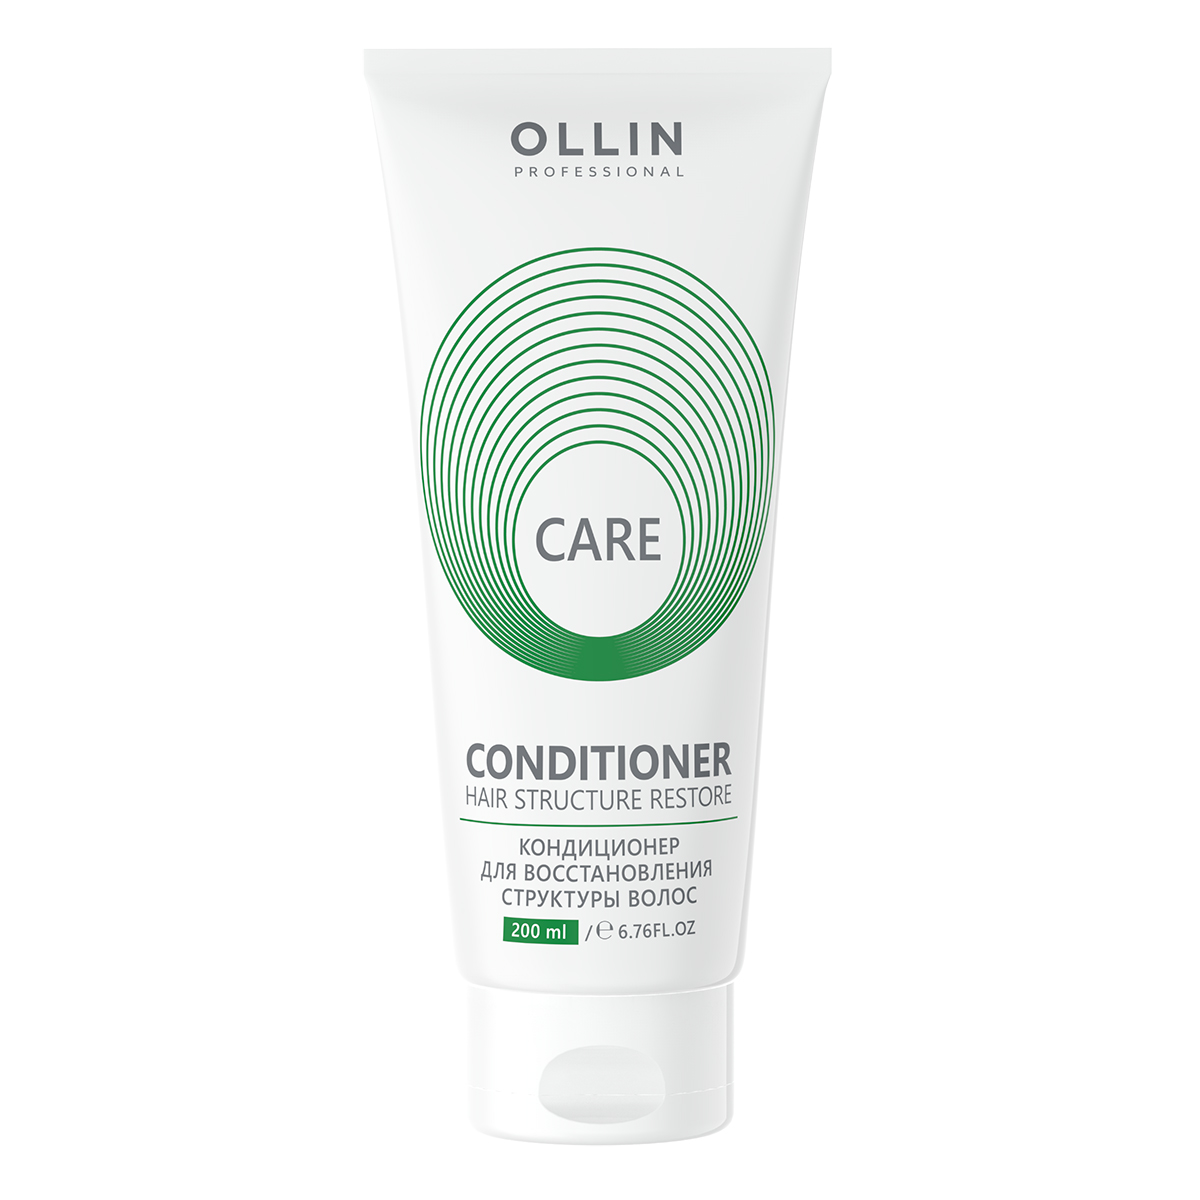 Купить Care Кондиционер для восстановления структуры волос, 200 мл, OLLIN, OLLIN Professional